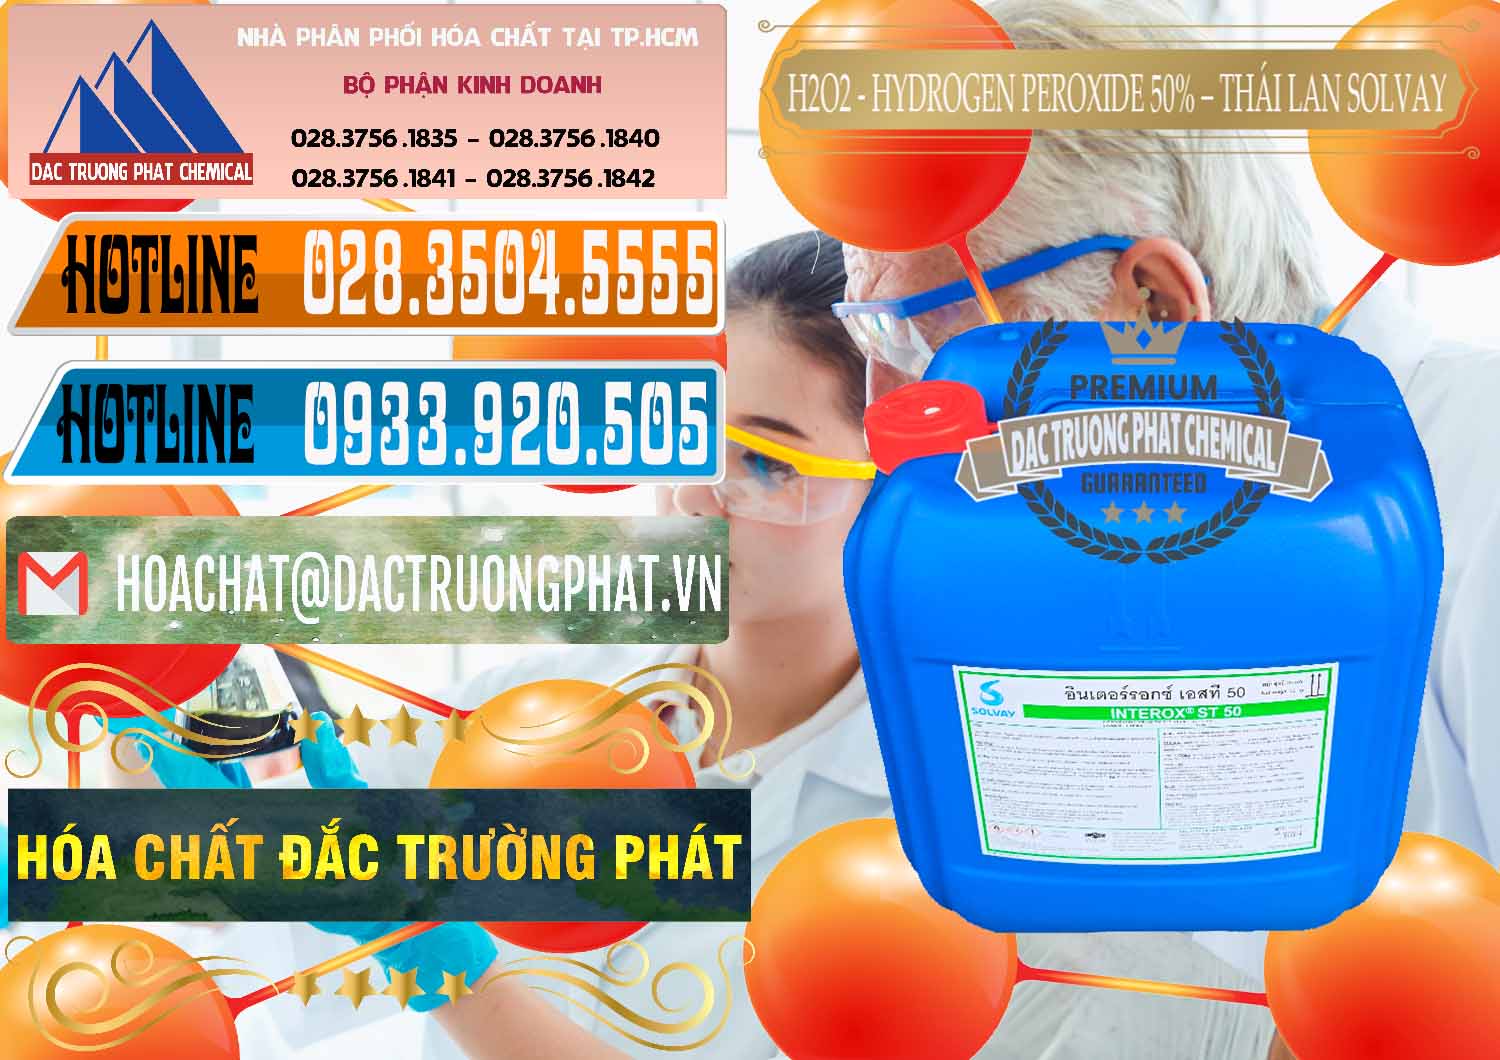 Nơi chuyên bán & cung cấp H2O2 - Hydrogen Peroxide 50% Thái Lan Solvay - 0068 - Chuyên cung cấp & phân phối hóa chất tại TP.HCM - stmp.net